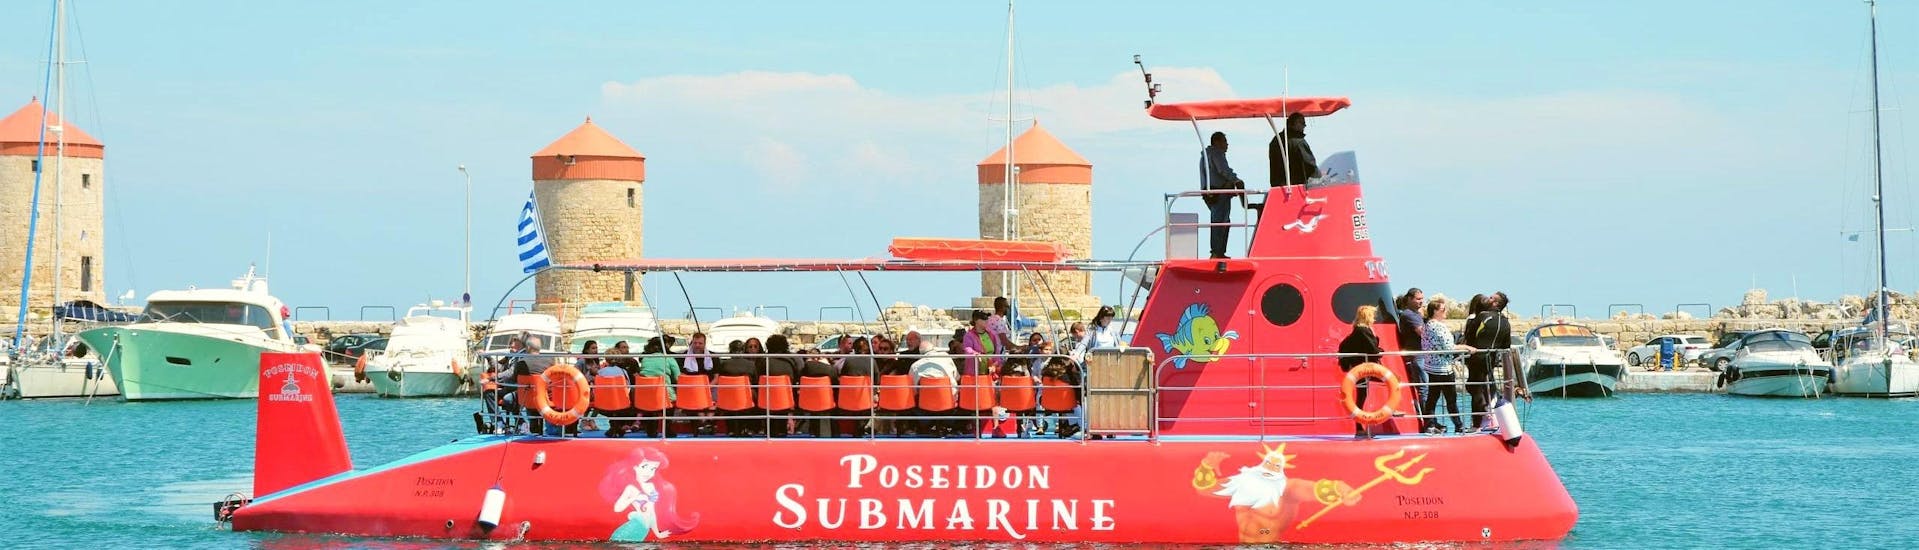 El semi-submarino de Poseidon Submarine Rhodes está saliendo del puerto de Mandraki